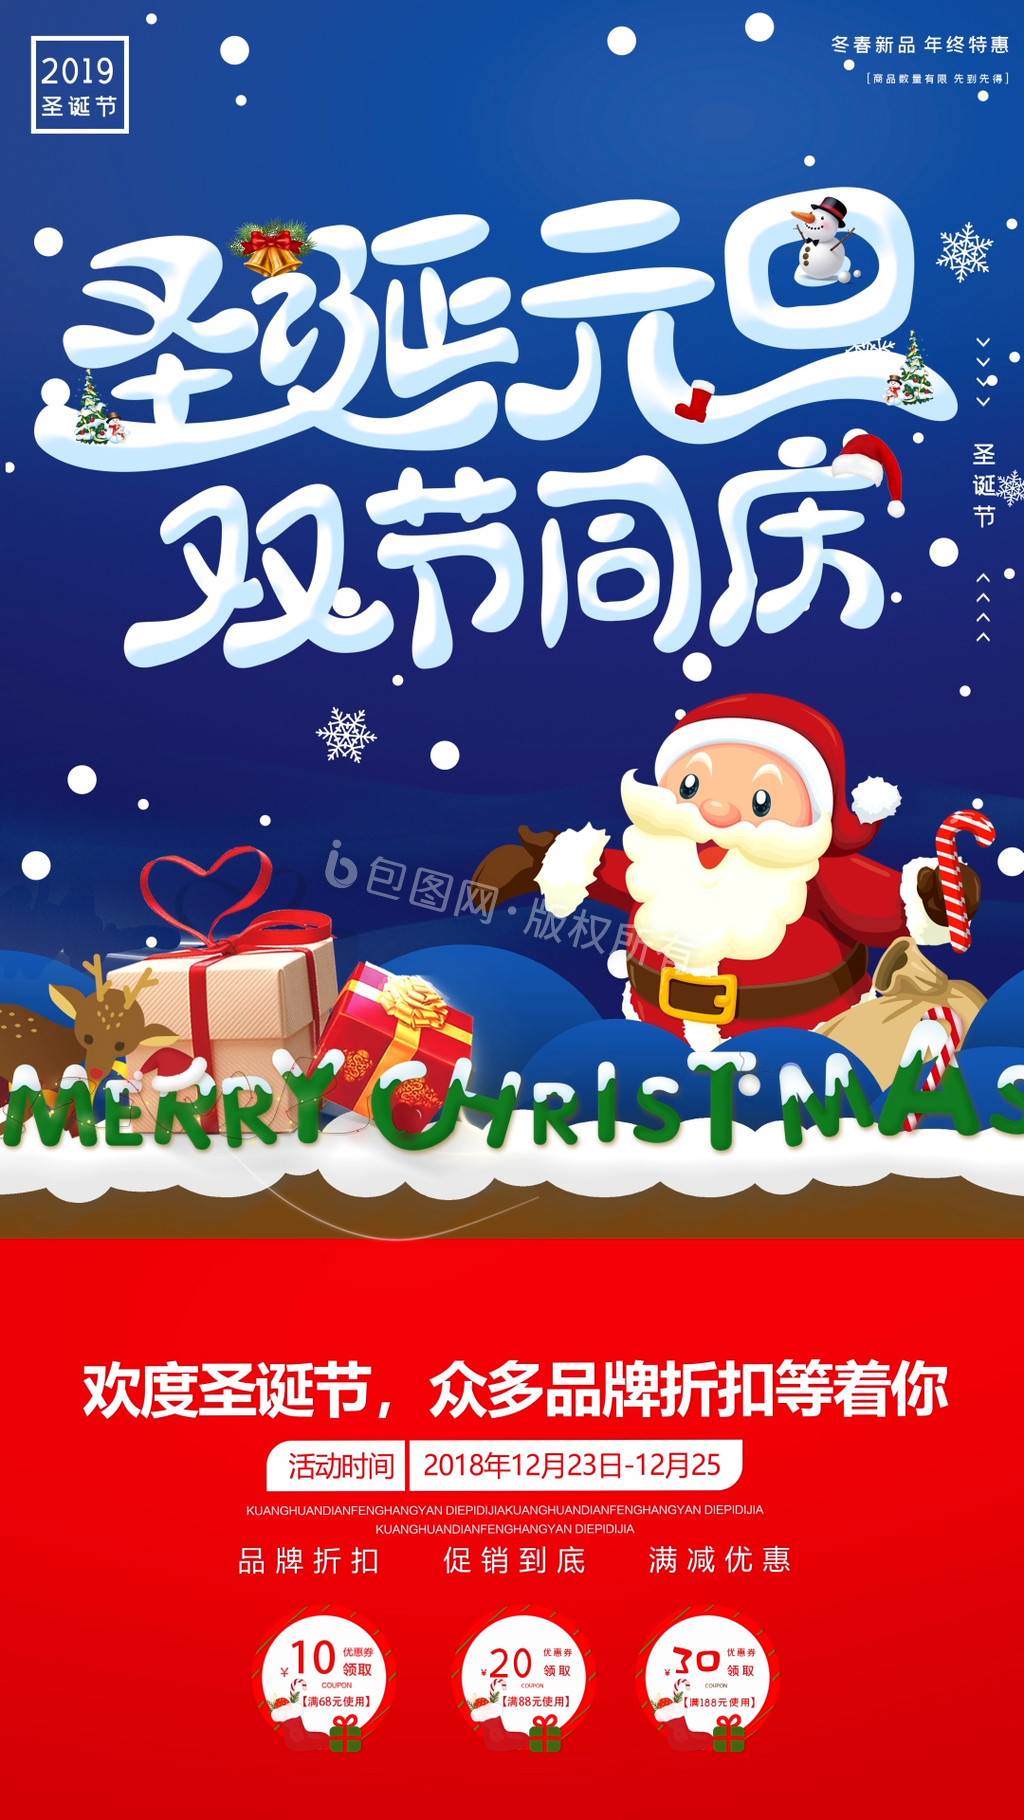 商场圣诞元旦双节同庆促销动态海报GIF图片